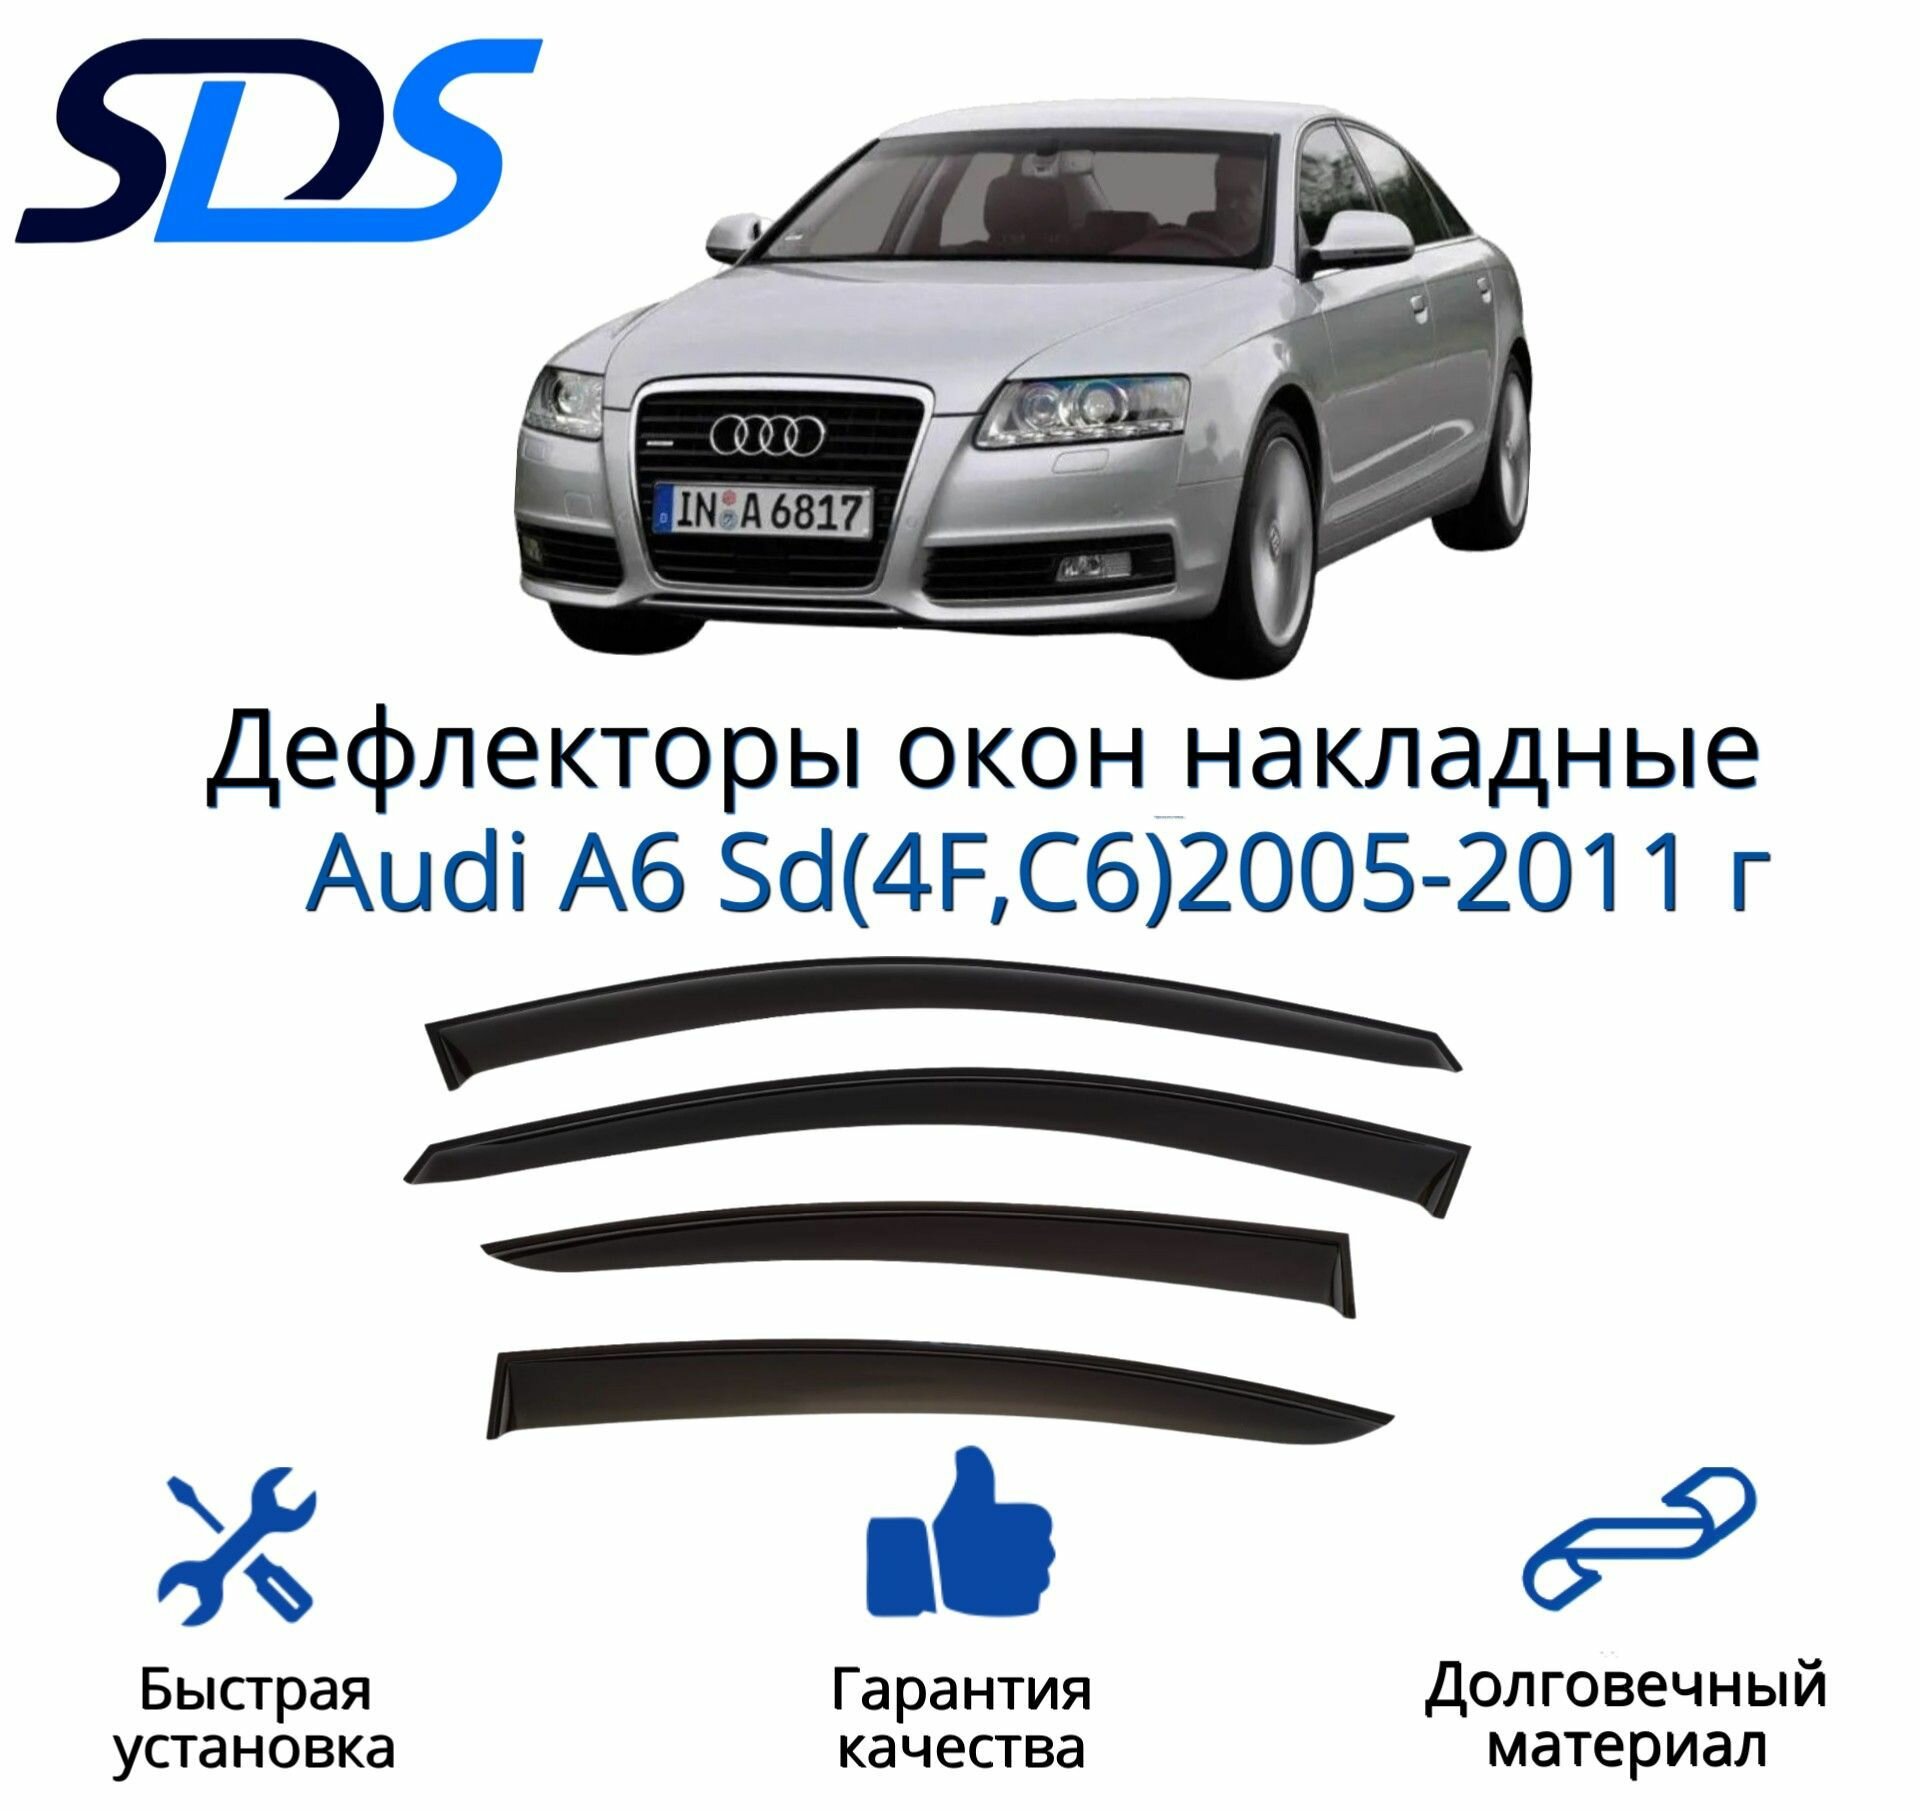 Дефлекторы окон (ветровики) для Audi A6 Sd(4F, C6)2005-2011 г.